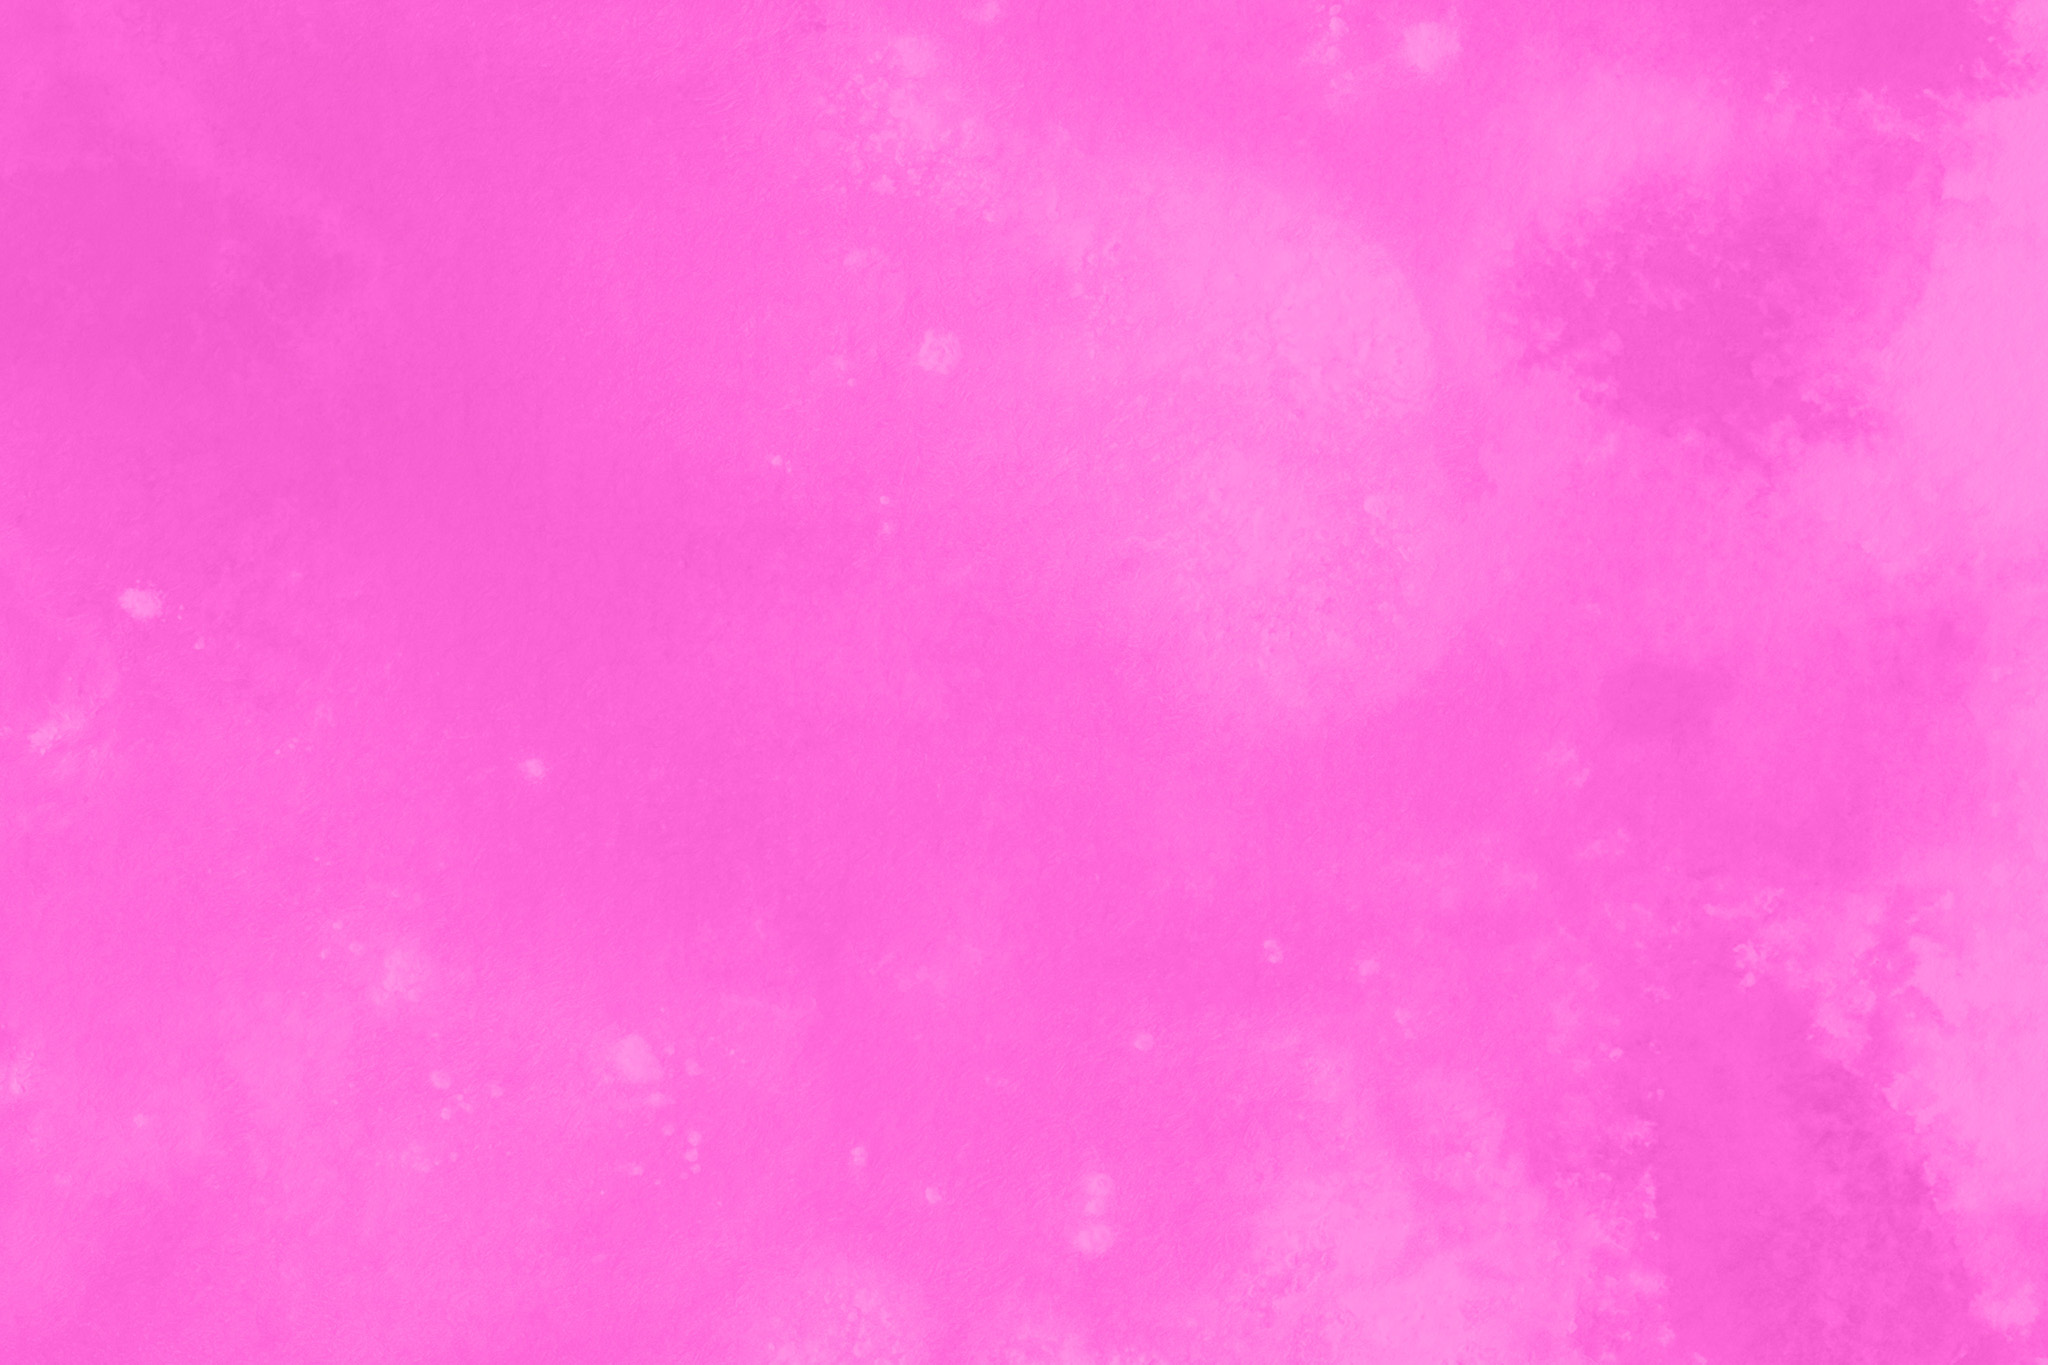 おしゃれなピンク色の綺麗な画像 の画像素材を無料ダウンロード 1 フリー素材 Beiz Images